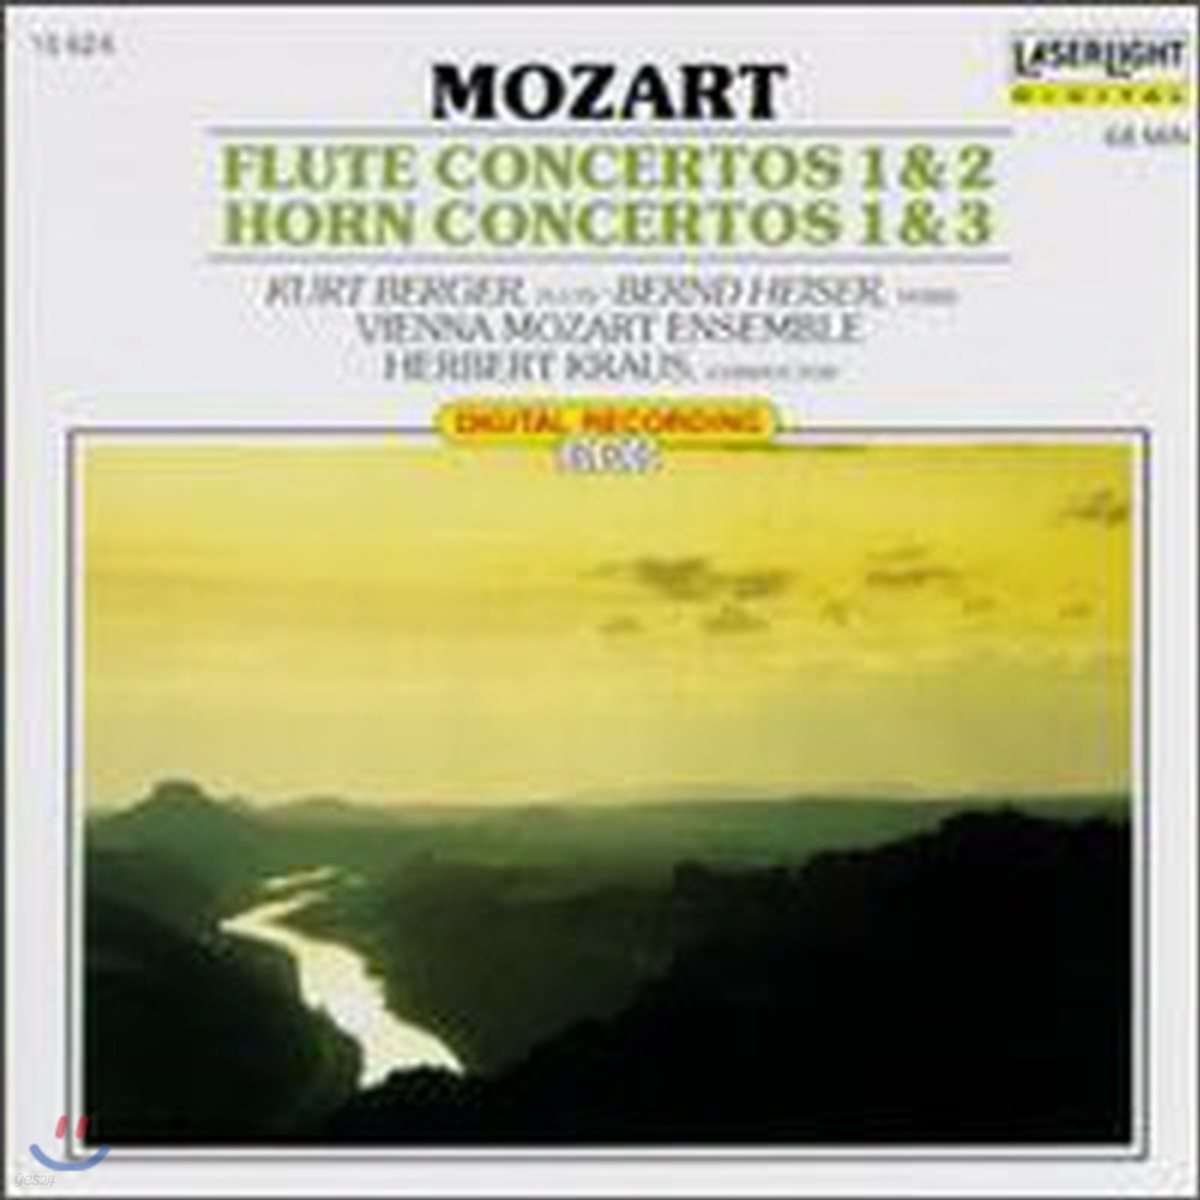 [중고] Herbert Kraus / Mozart: Flute Concertos Nos. 1&2, Horn Concertos Nos. 1&3 (수입/15624)